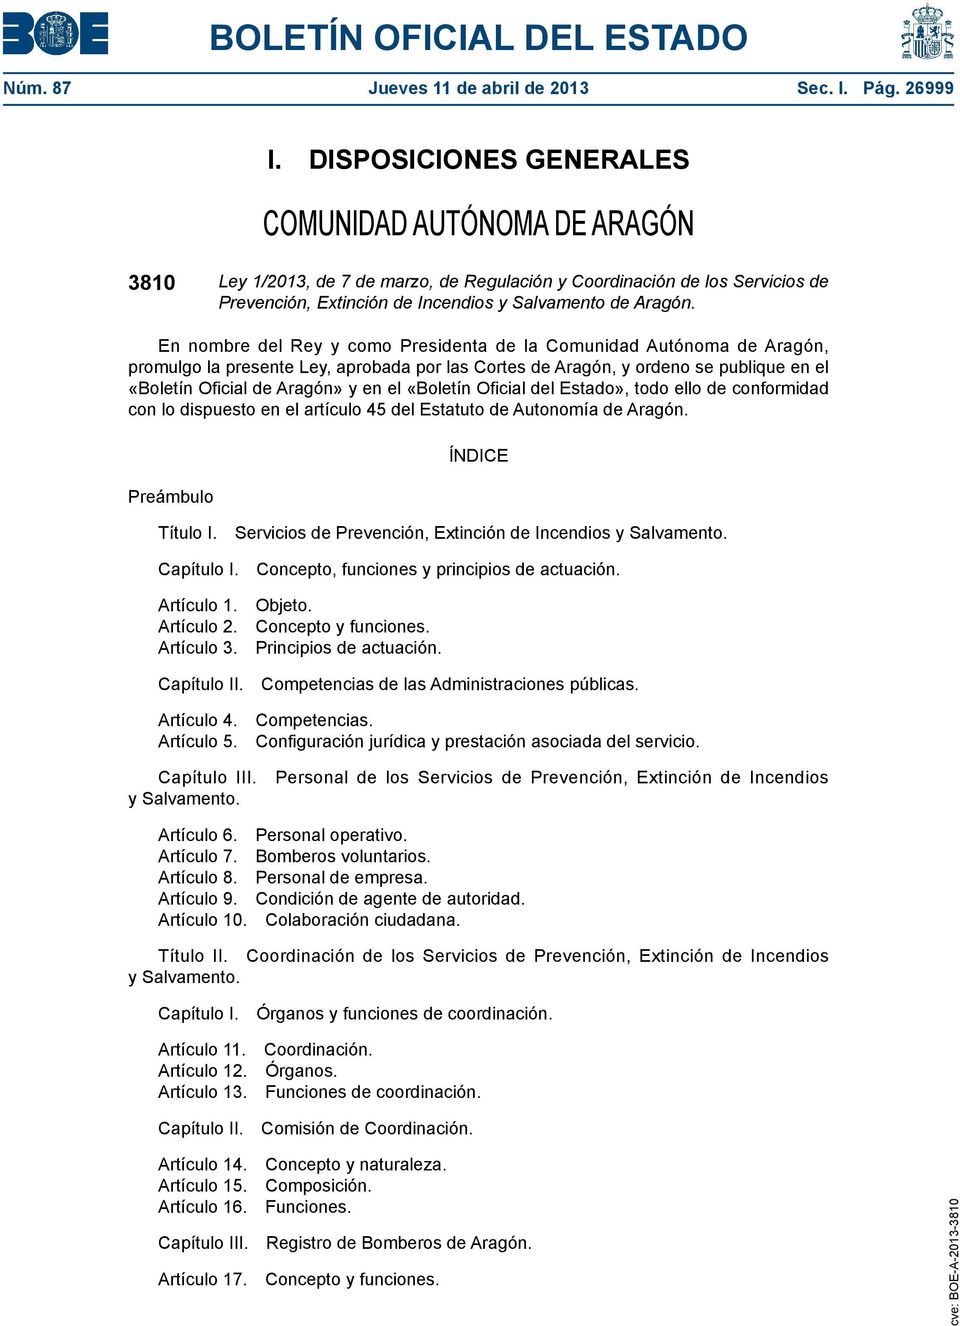 En nombre del Rey y como Presidenta de la Comunidad Autónoma de Aragón, promulgo la presente Ley, aprobada por las Cortes de Aragón, y ordeno se publique en el «Boletín Oficial de Aragón» y en el